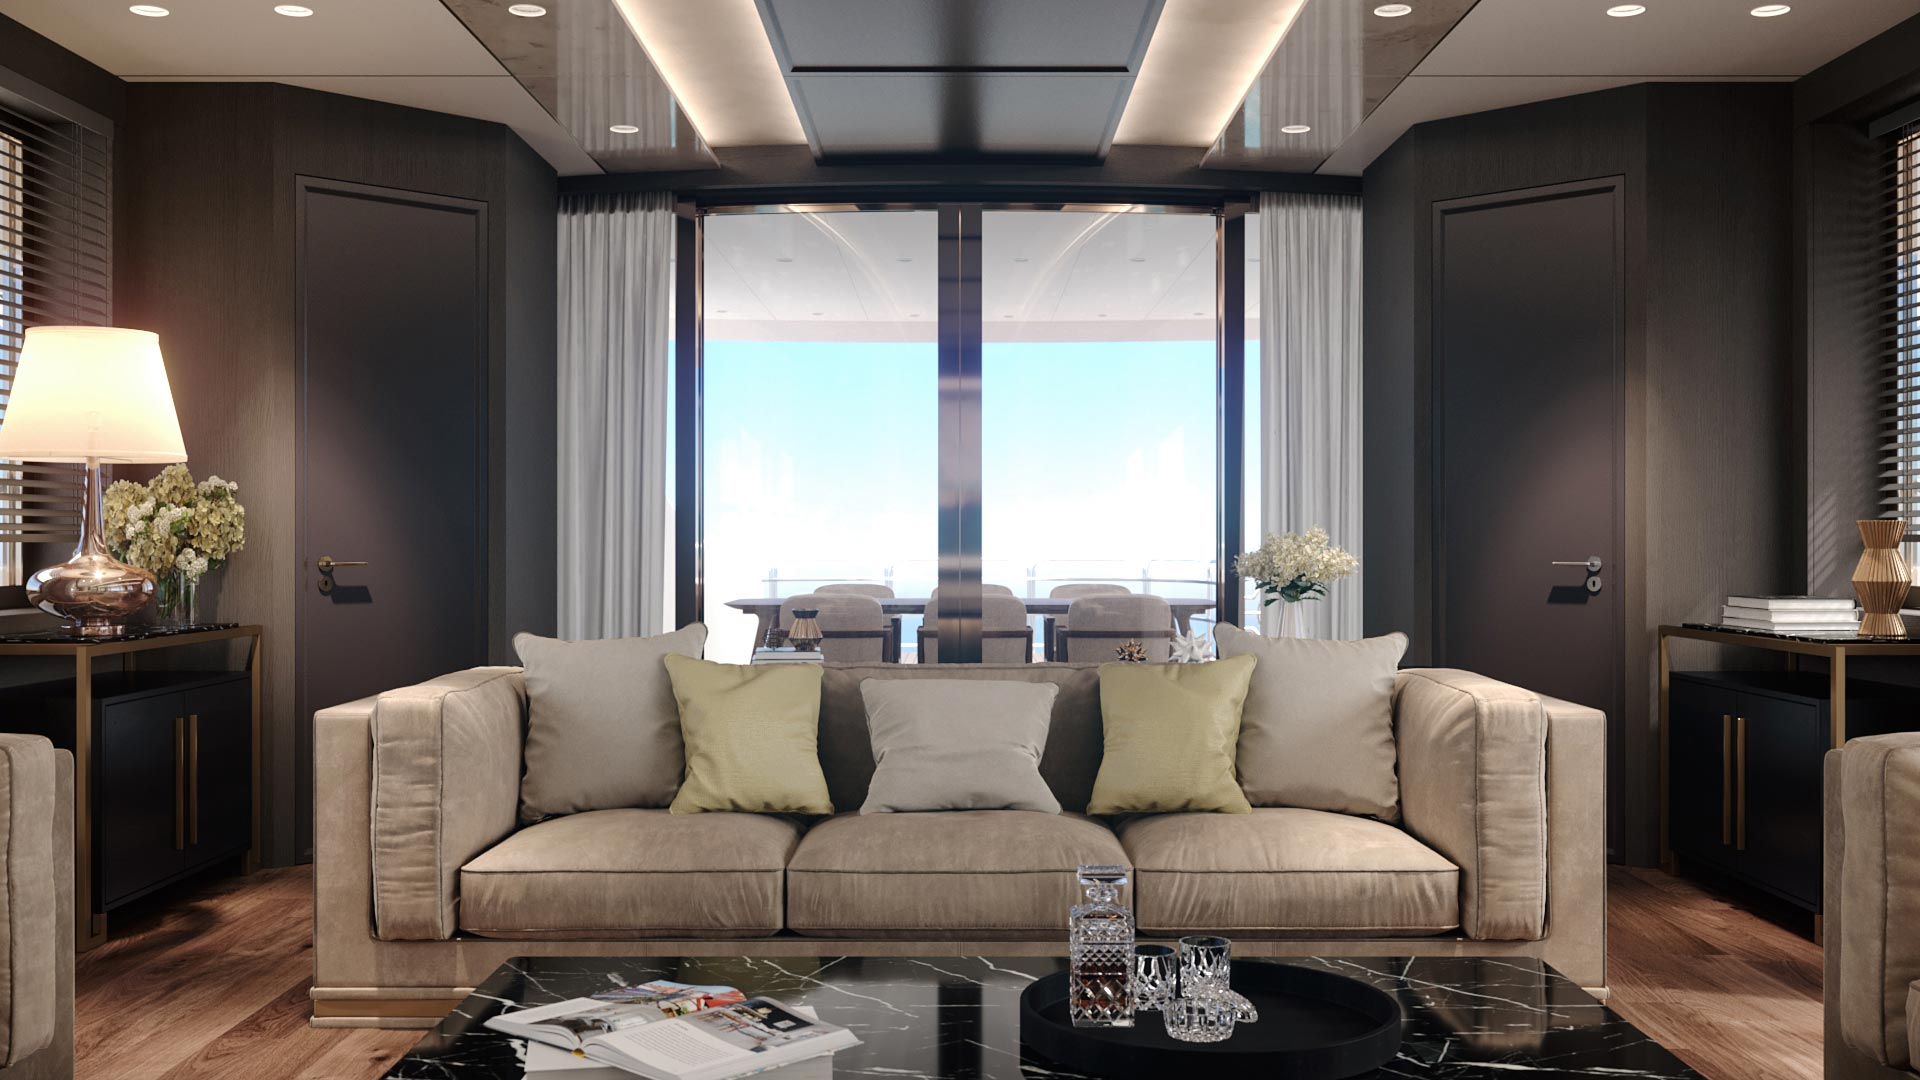 Modellazione e rendering 3D spazi interni yacht